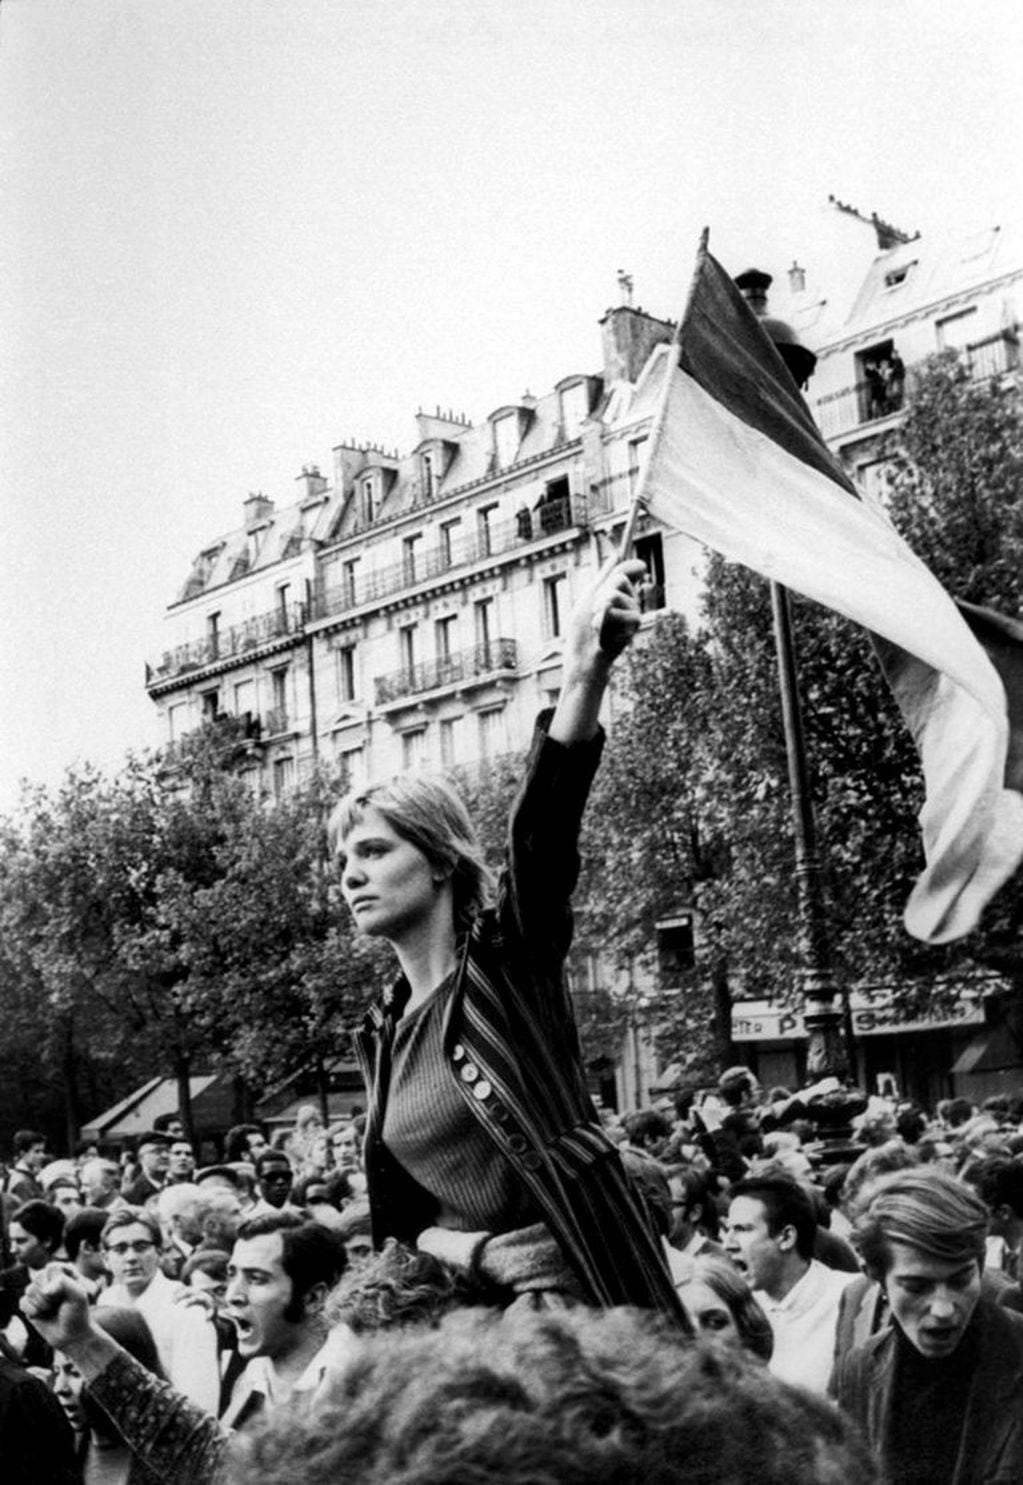 Caroline Brener era una inglesa de visita en París en esos días de mayo y asegura que se subió a los hombros de un amigo porque estaba cansada, que no sabía de qué era esa bandera y que alguien tomó la foto sin que ella  sospechara que luego se convertiría en la involuntaria “Marianne del mayo francés”.